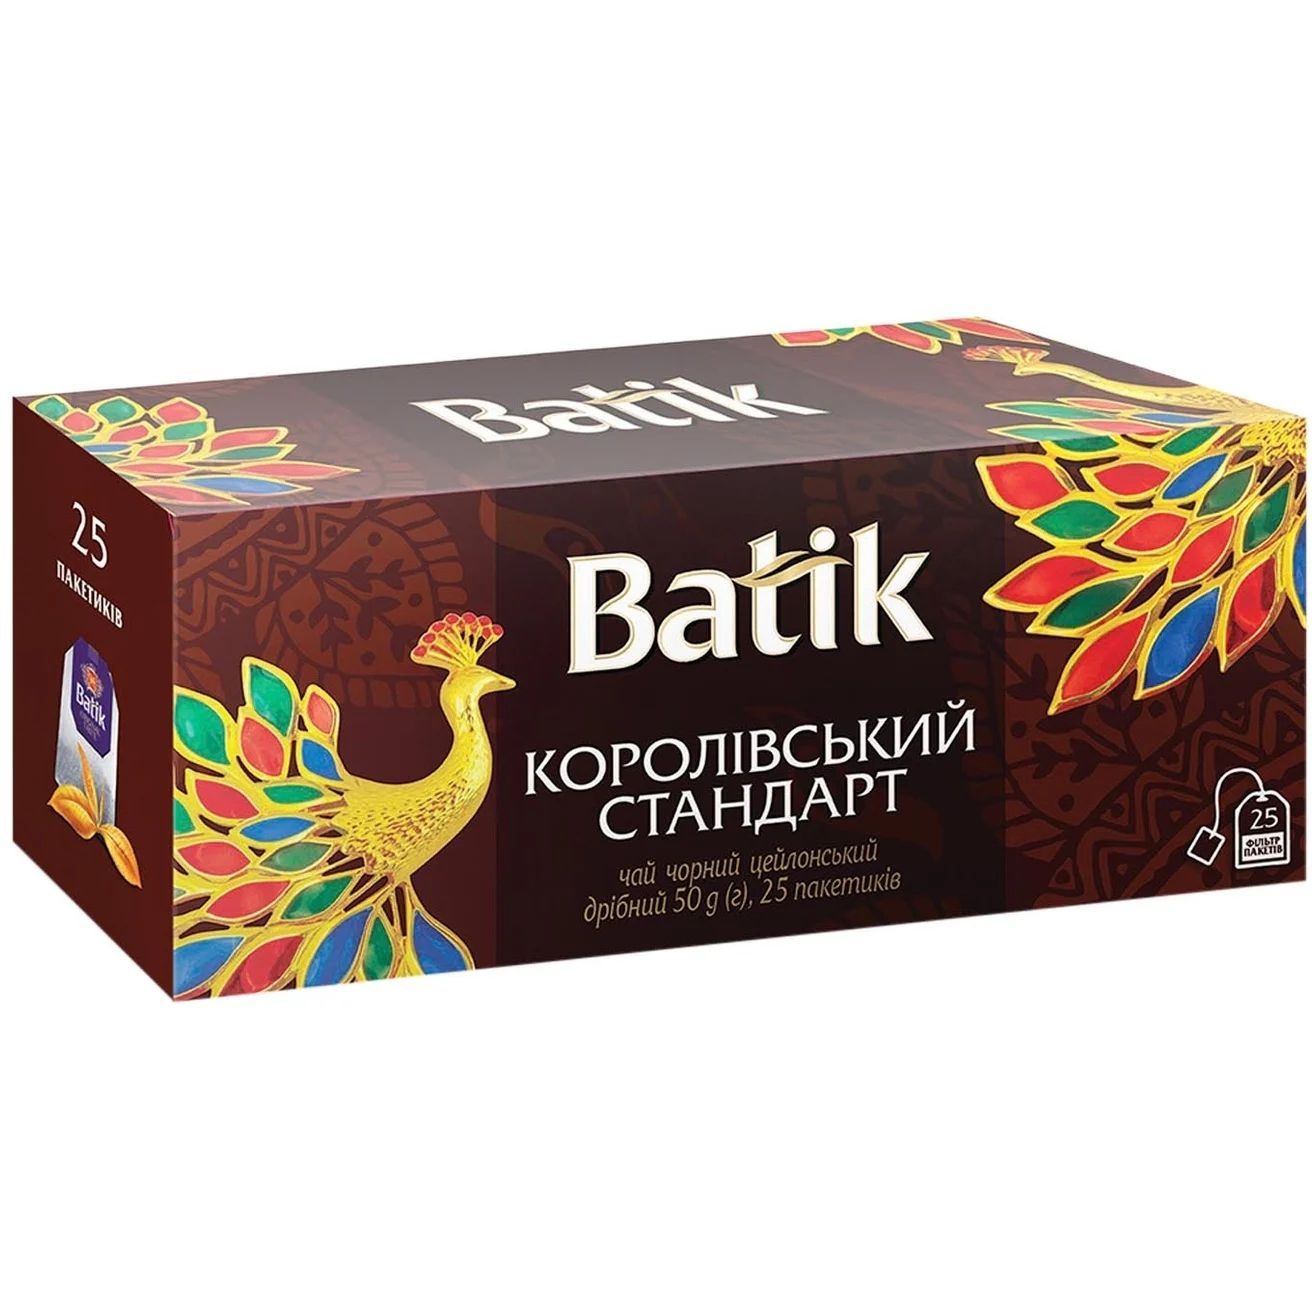 Чай черный Batik Королевский стандарт цейлонский, мелкий, 50 г - фото 1